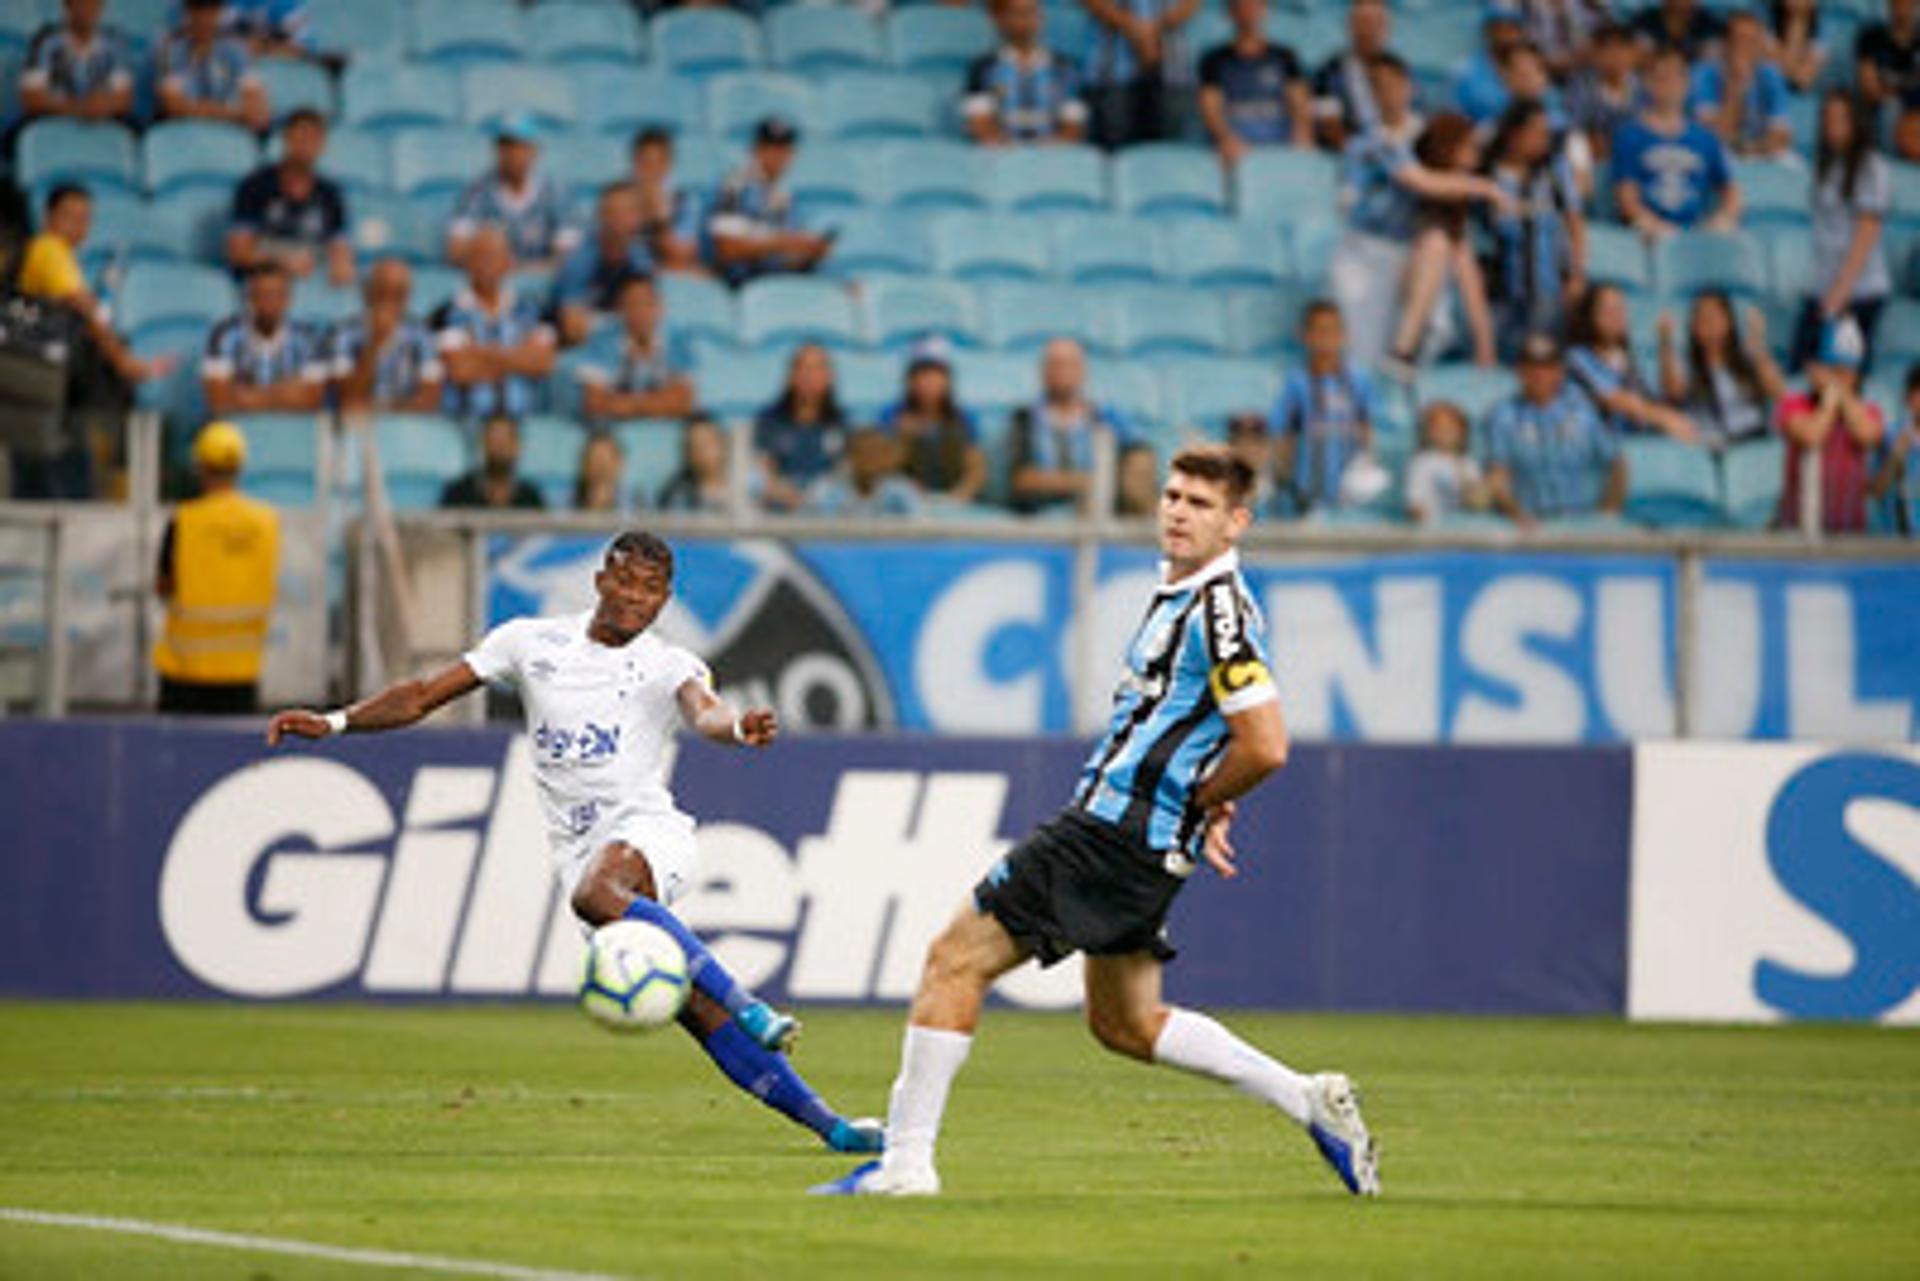 Grêmio x Cruzeiro - jejum de vitórias